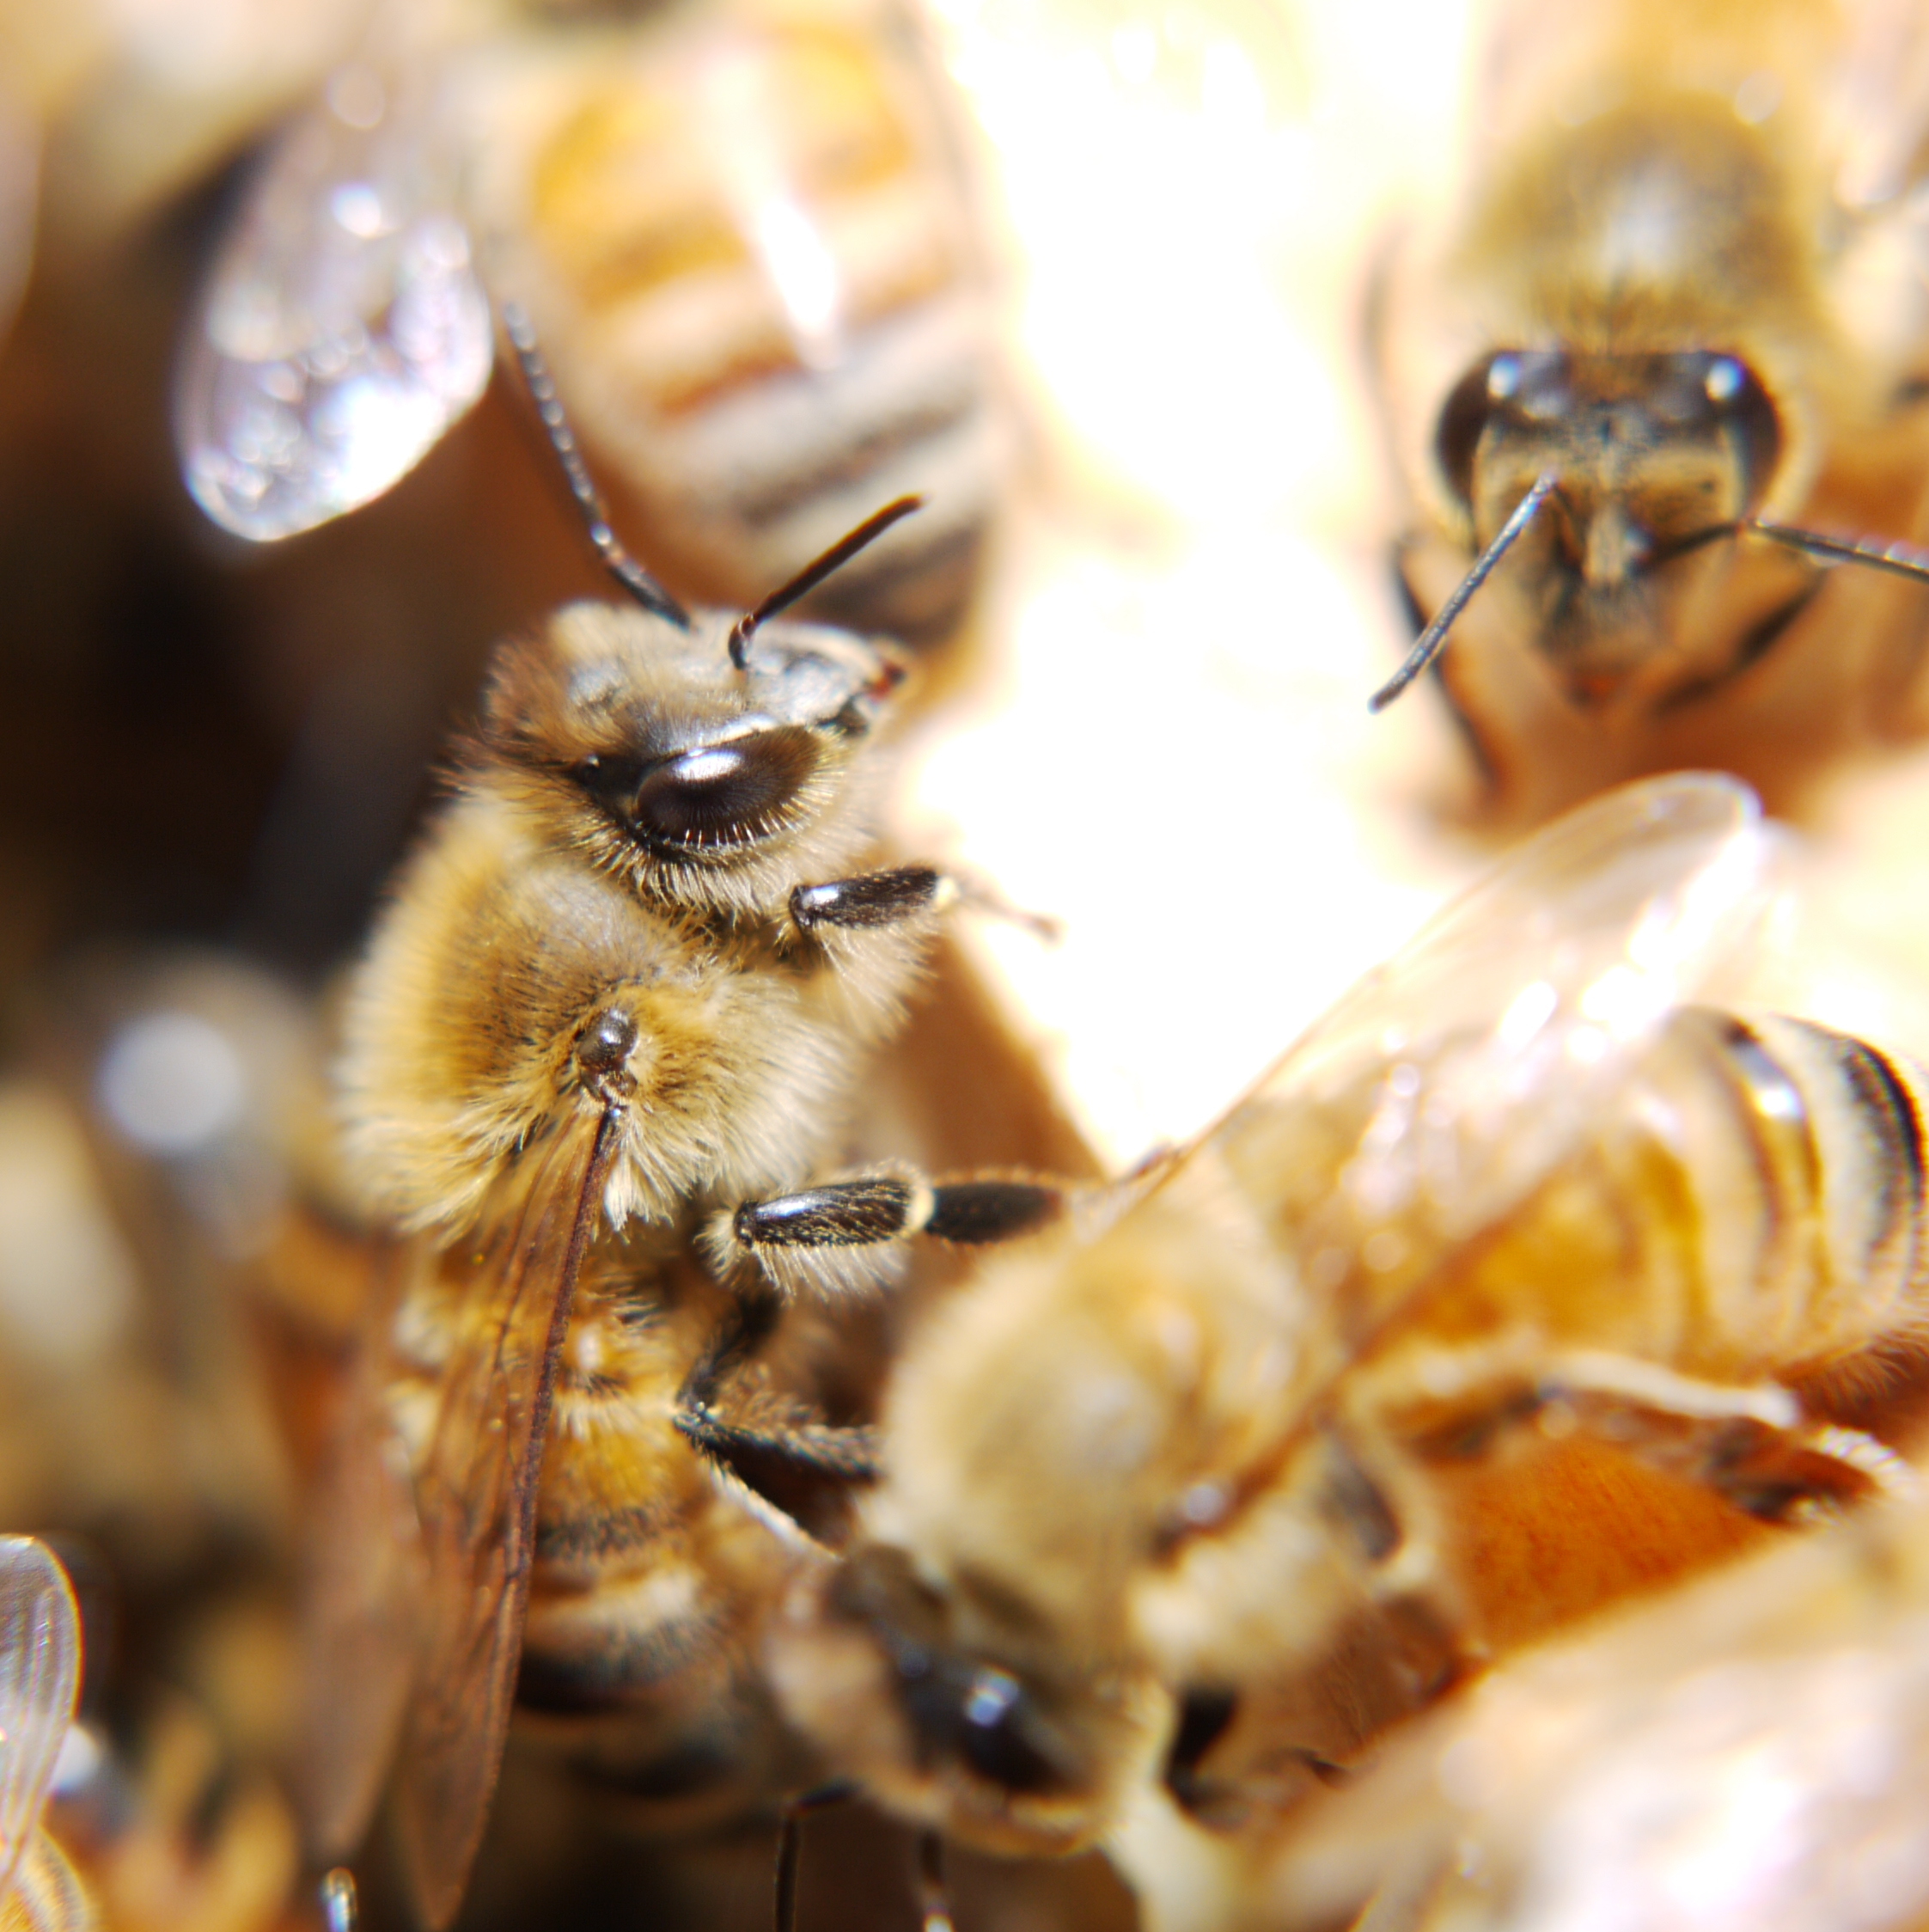 「ミツバチ」と「はちみつ」 - 一般社団法人 セルズ環境教育 